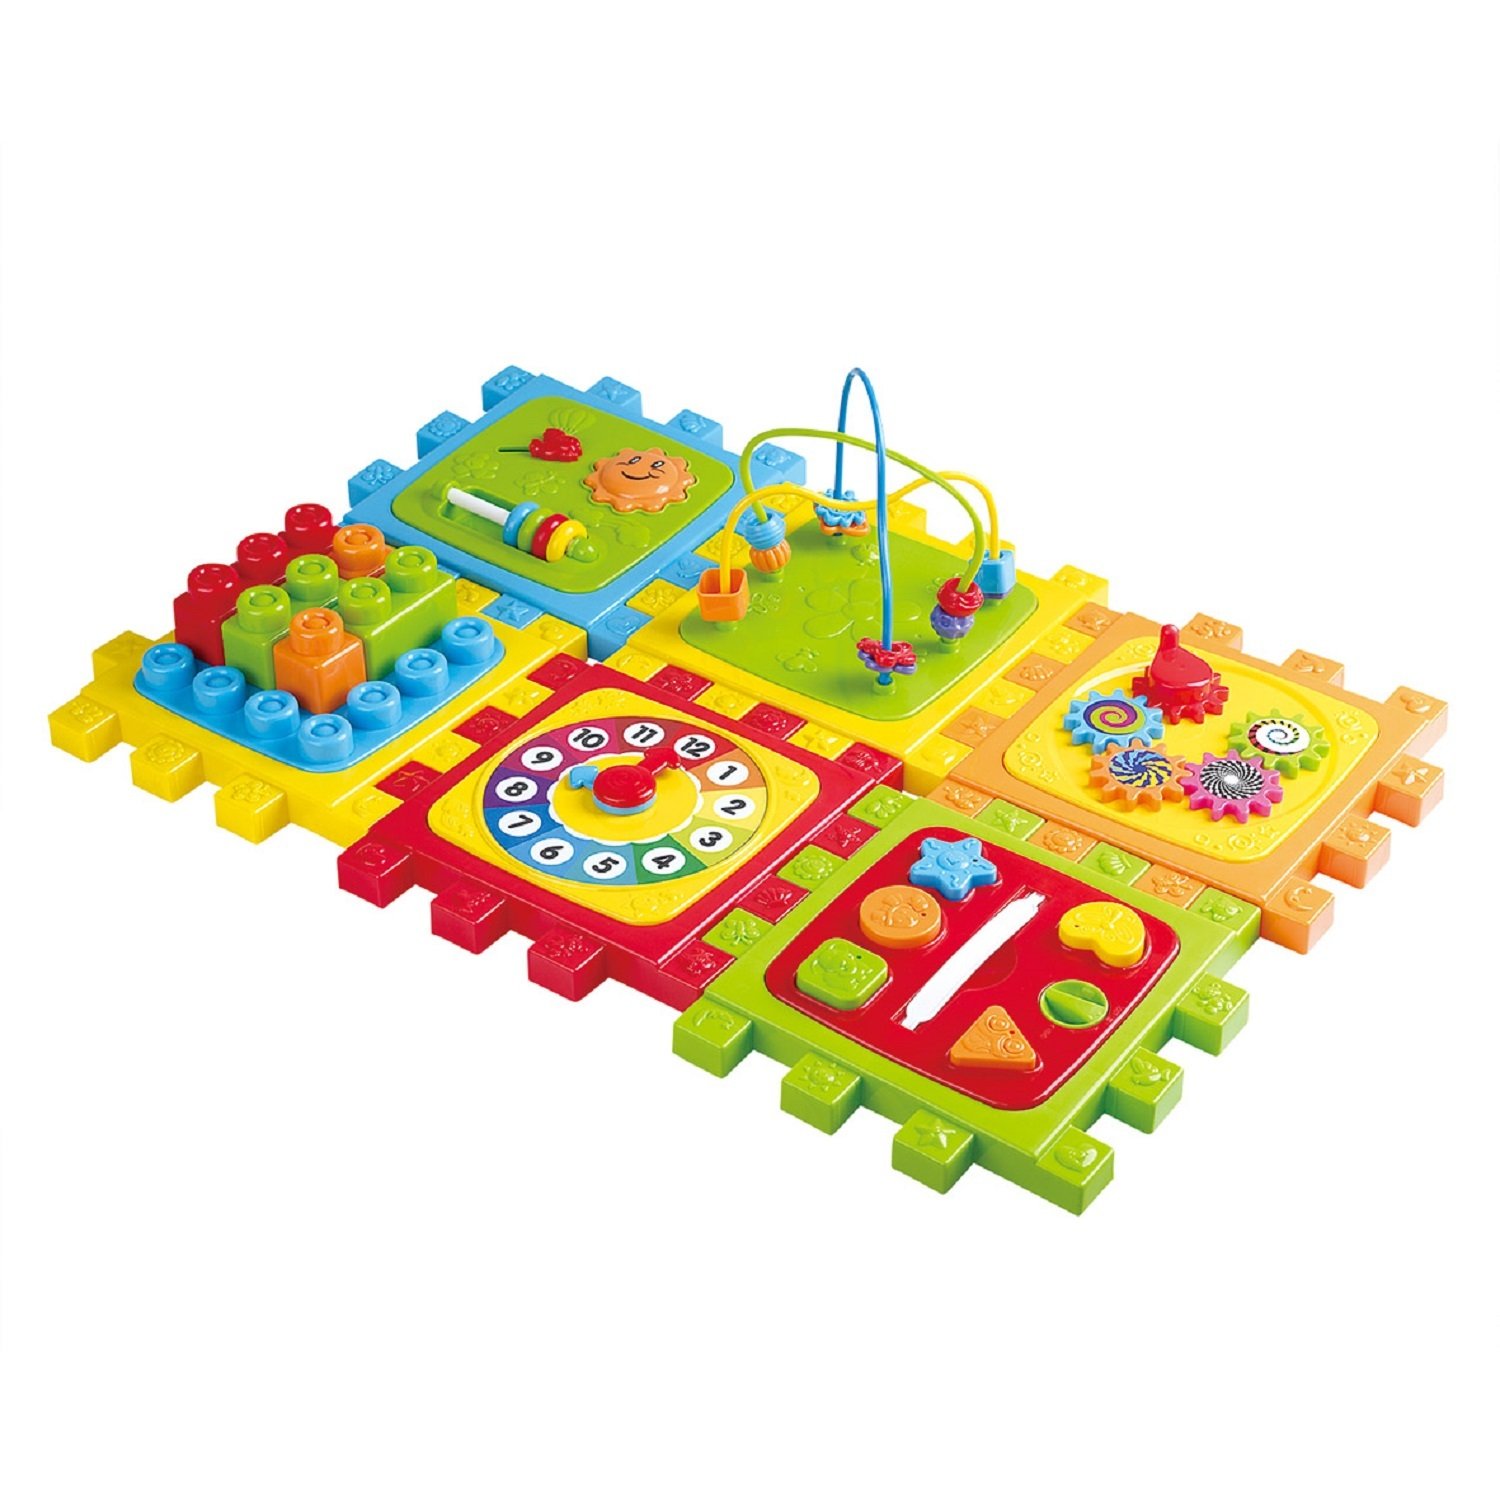 Игрушка развивающая Playgo Куб 6 в 1 Play 2147